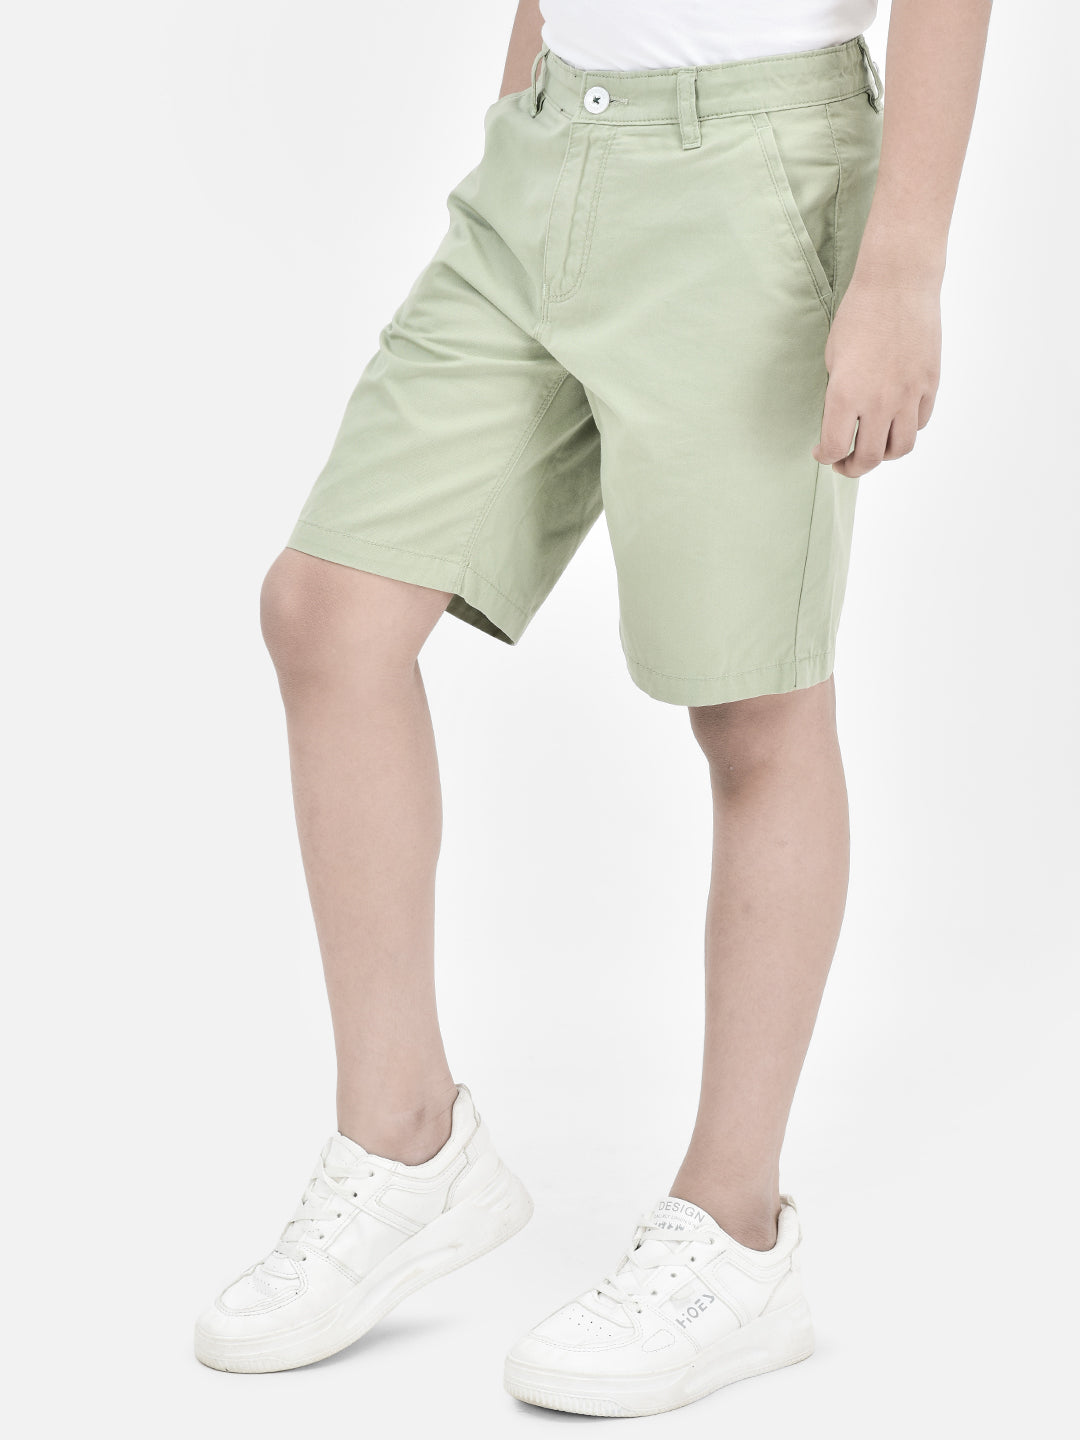 Olive Shorts-Boys Shorts-Crimsoune Club